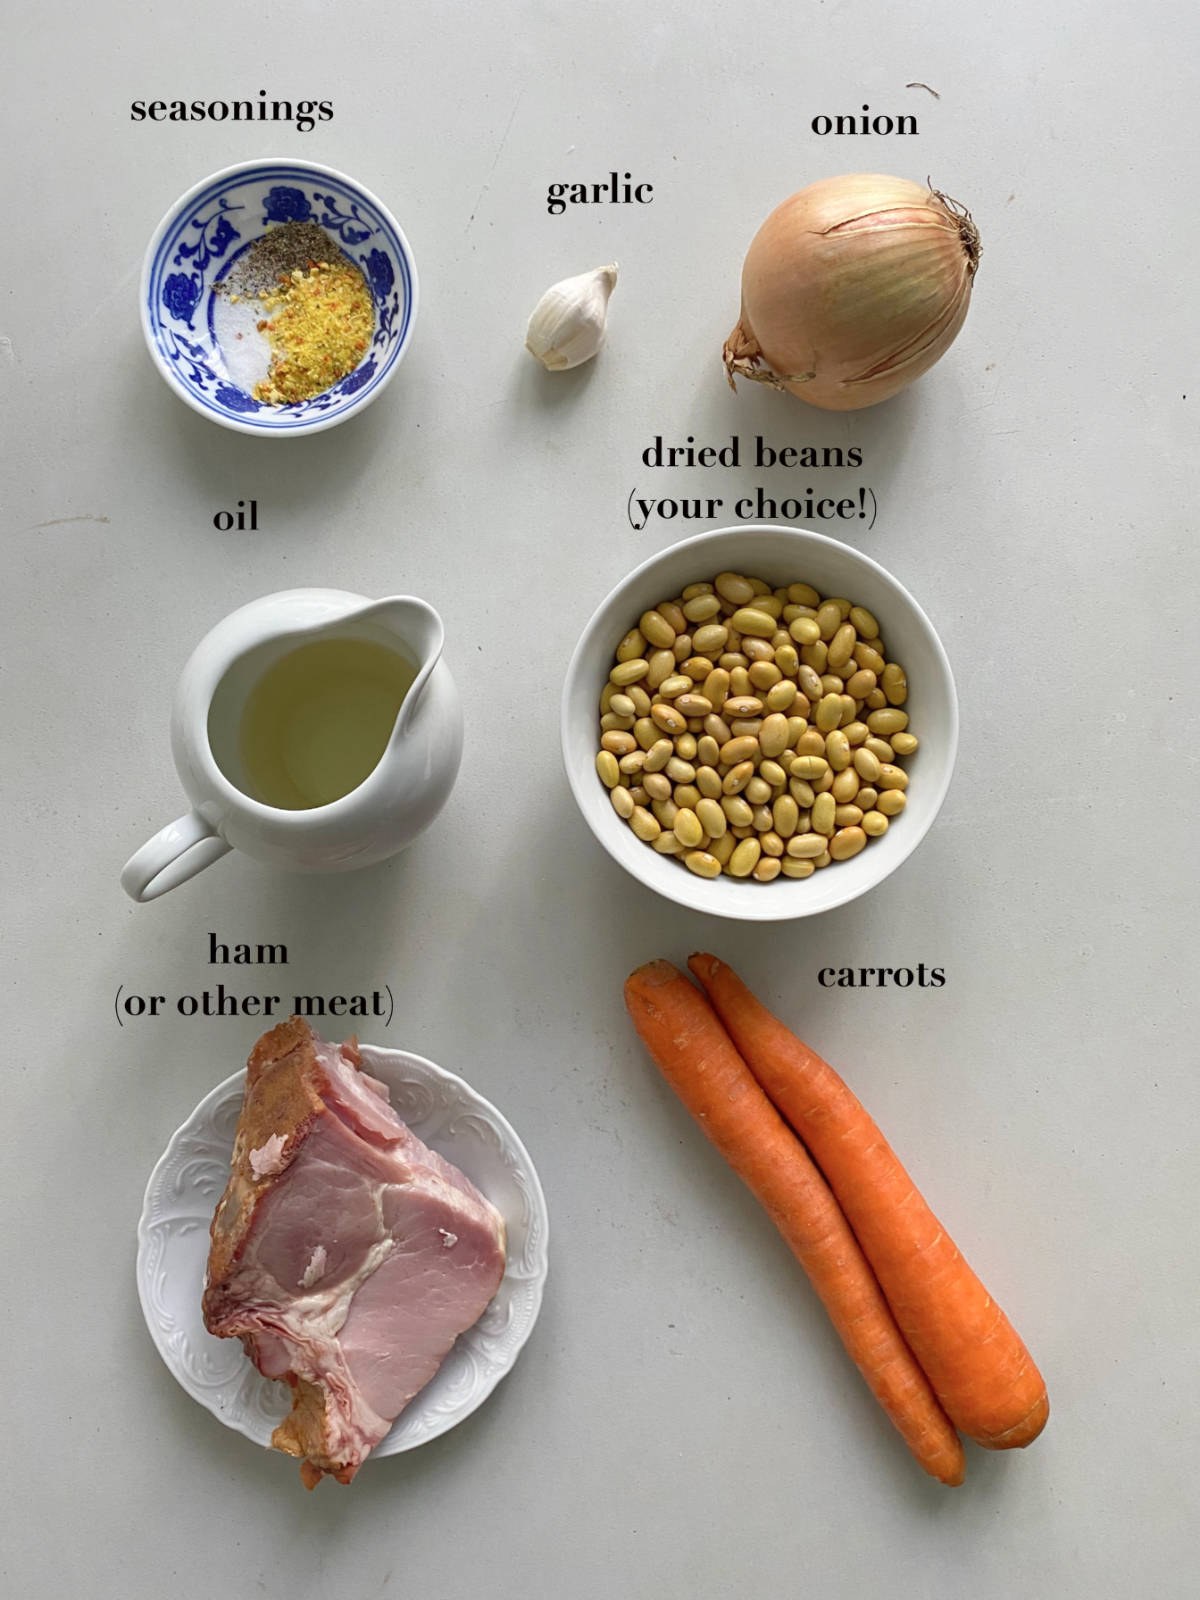 Stew ingredients (seasonings, meat, beans, etc) on a gray background.